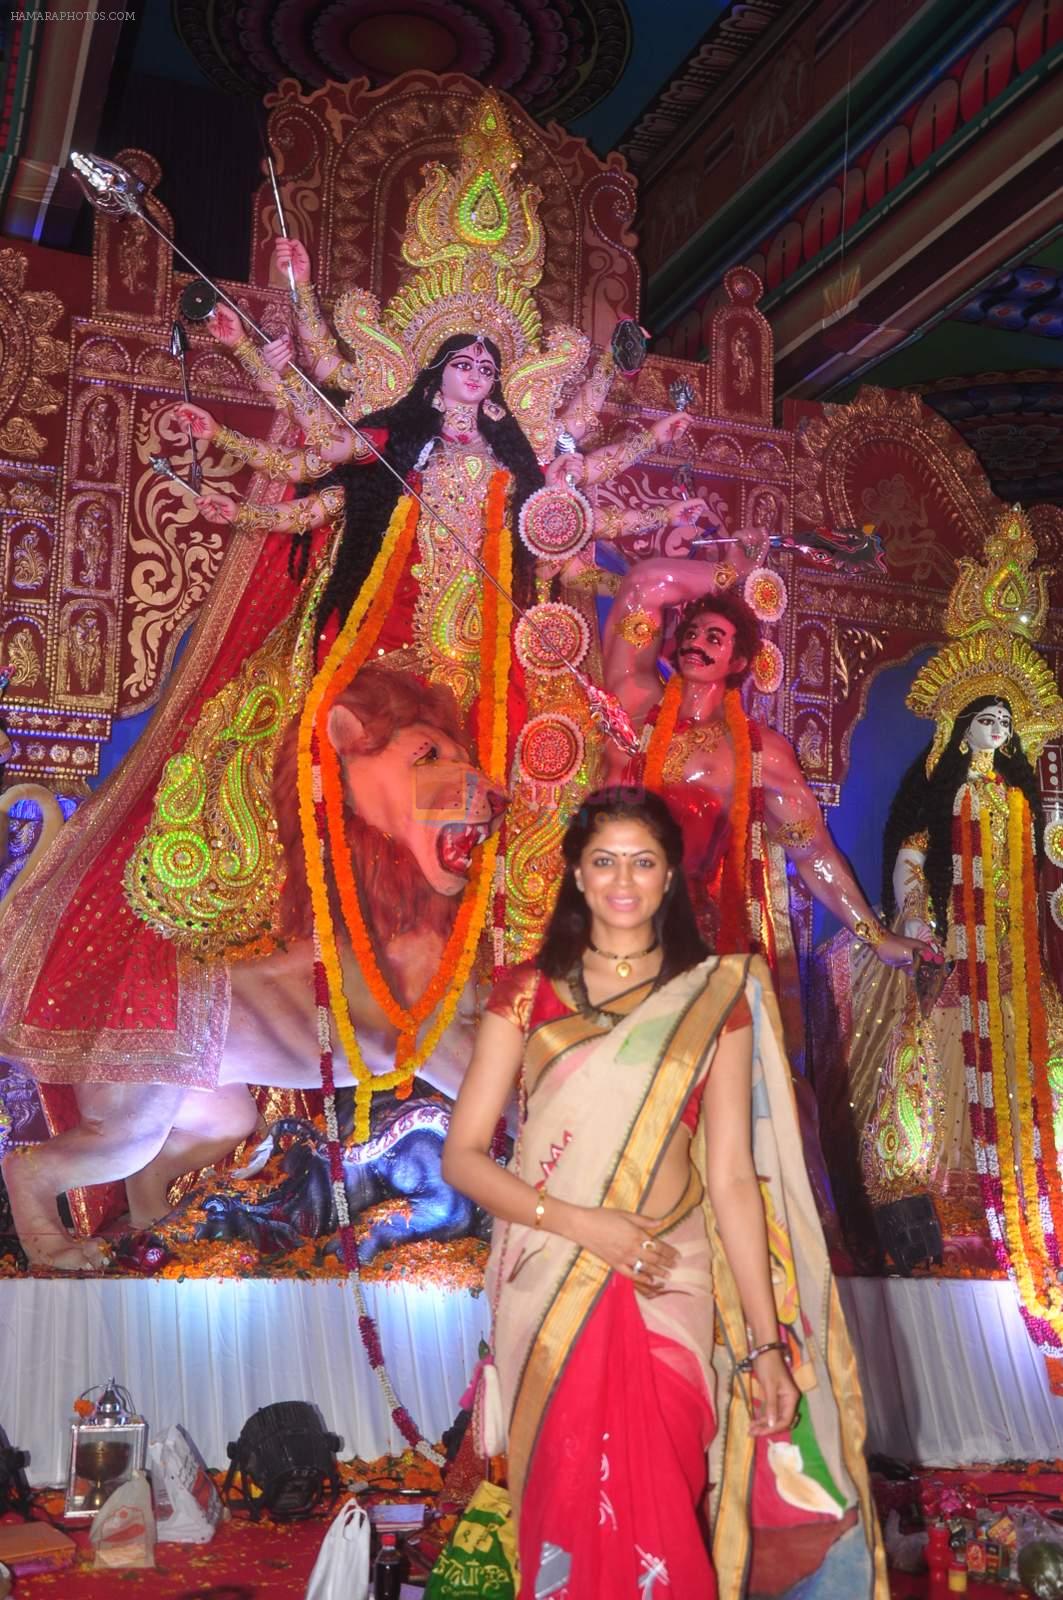 Kavita Kaushik at Durga Pooja Pandal on 20th Oct 2015